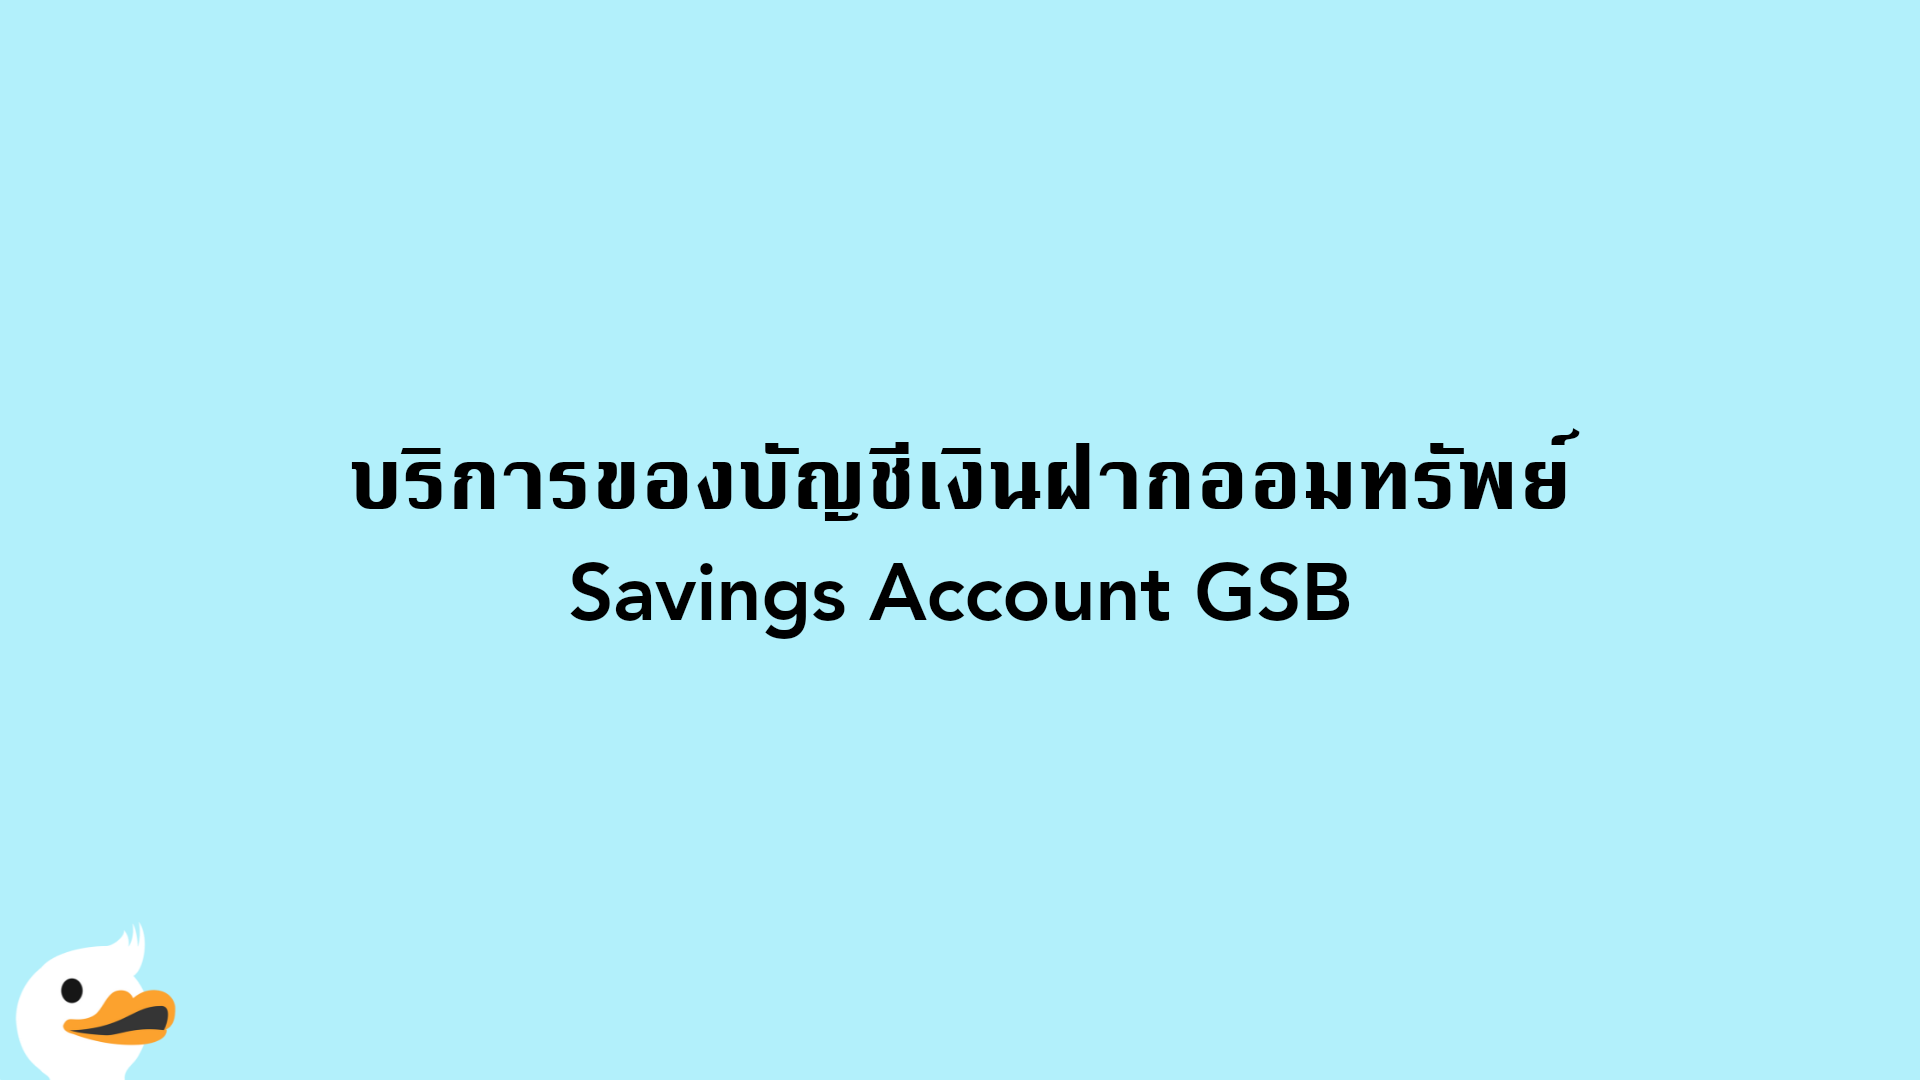 บริการของบัญชีเงินฝากออมทรัพย์ Savings Account GSB